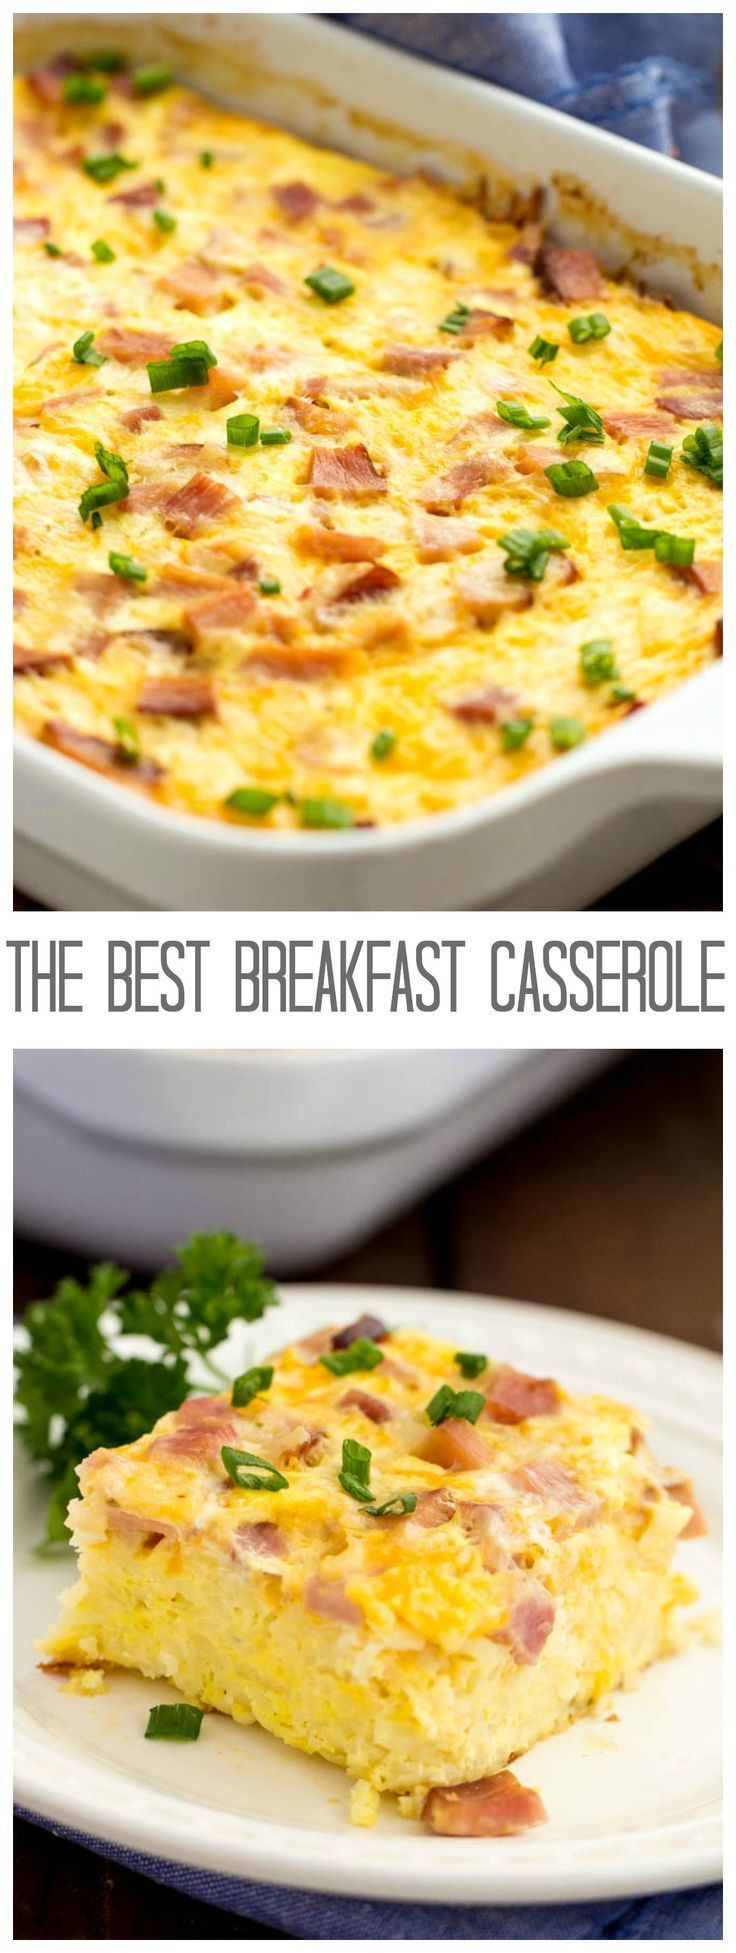 Best Egg Breakfast Recipes
 The Best Breakfast Casserole Recipe